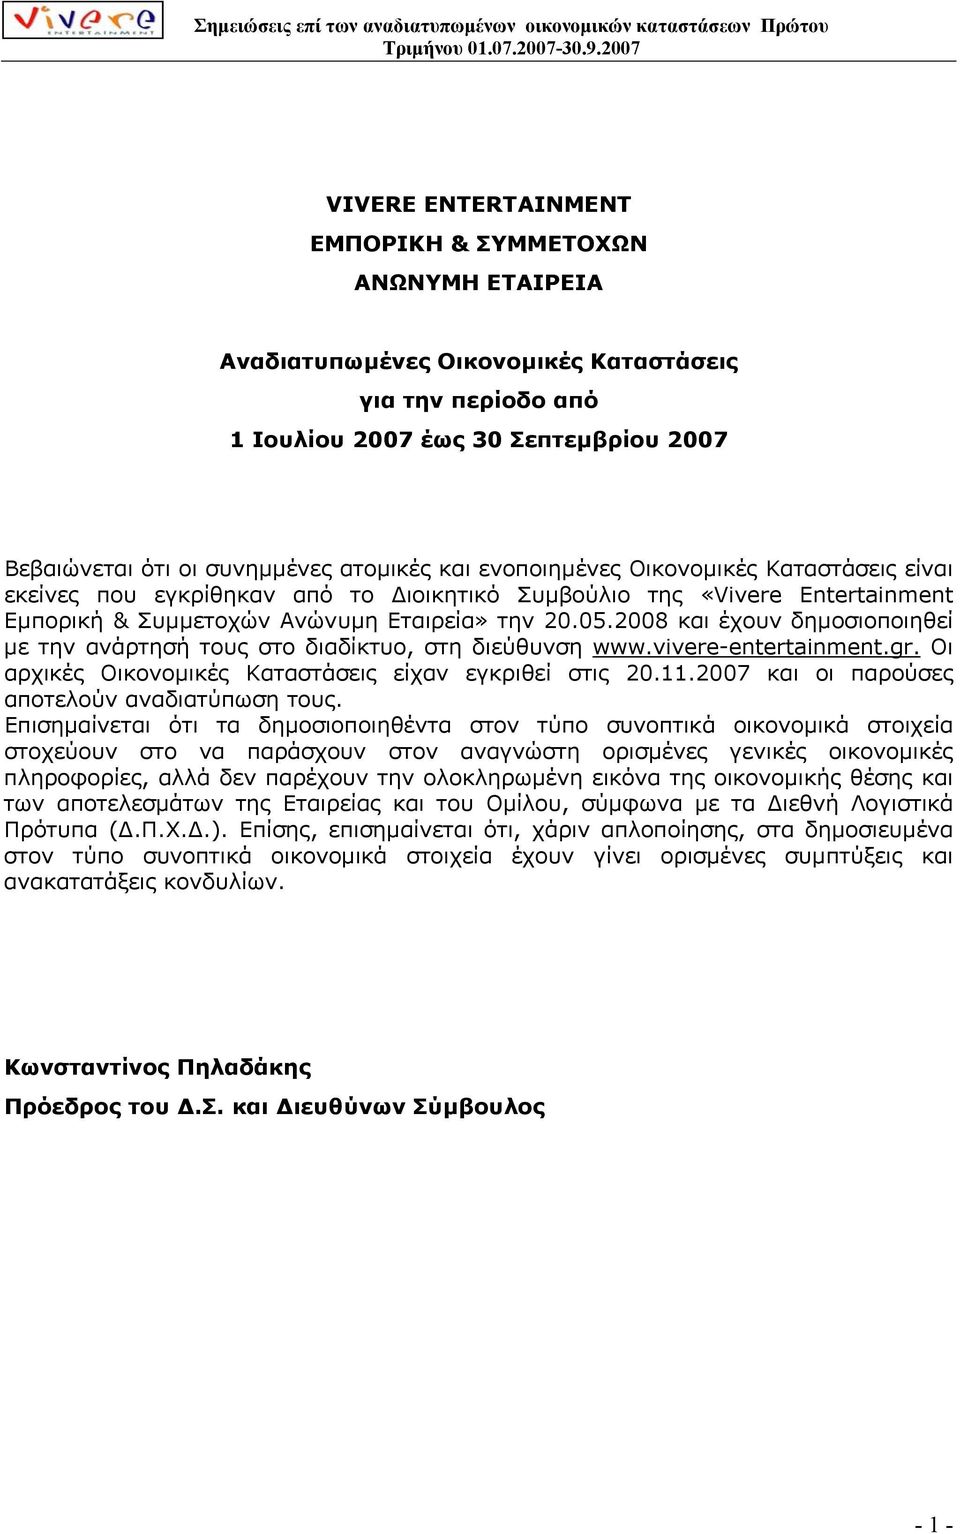 2008 και έχουν δηµοσιοποιηθεί µε την ανάρτησή τους στο διαδίκτυο, στη διεύθυνση www.vivere-entertainment.gr. Οι αρχικές Οικονοµικές Καταστάσεις είχαν εγκριθεί στις 20.11.